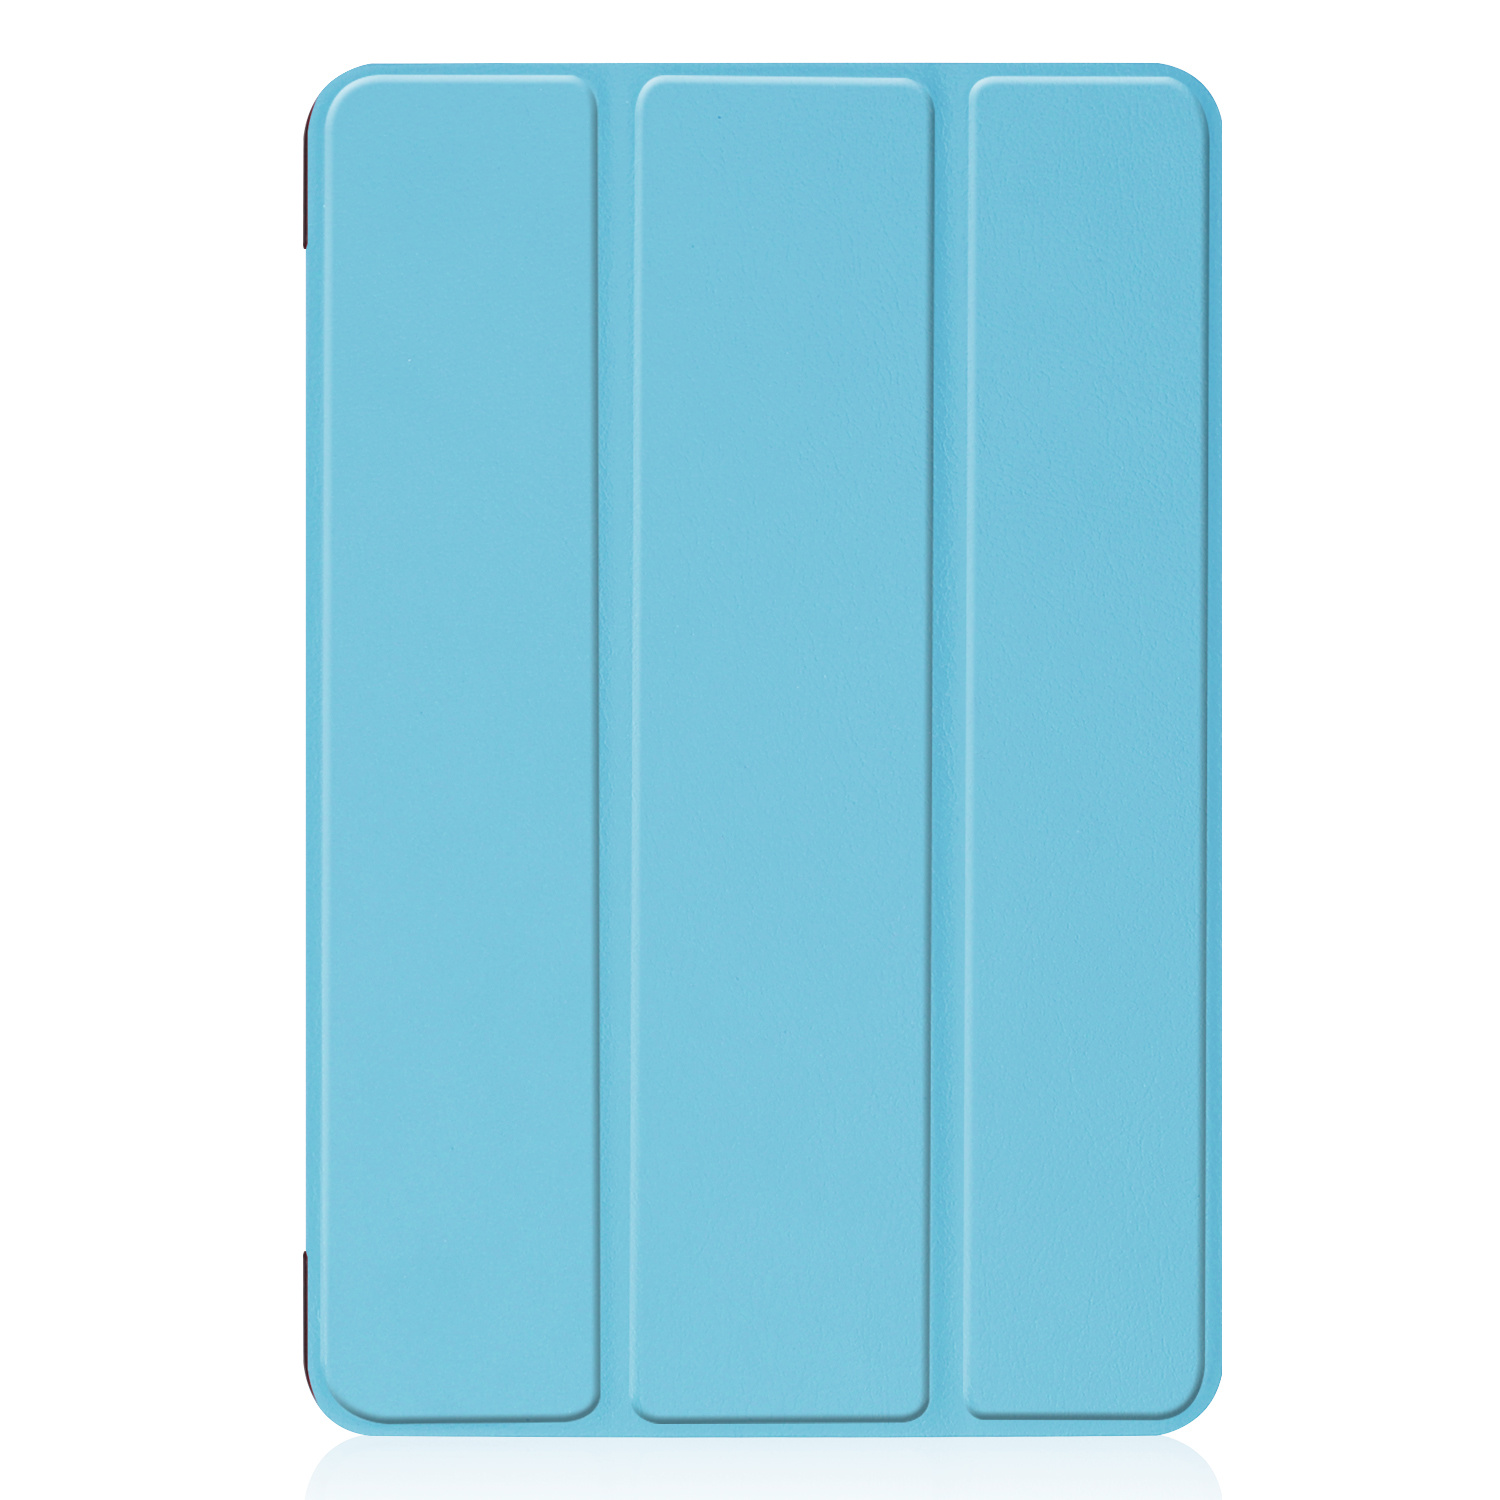 BASEY. iPad Mini 6 Hoesje - Lichtblauw